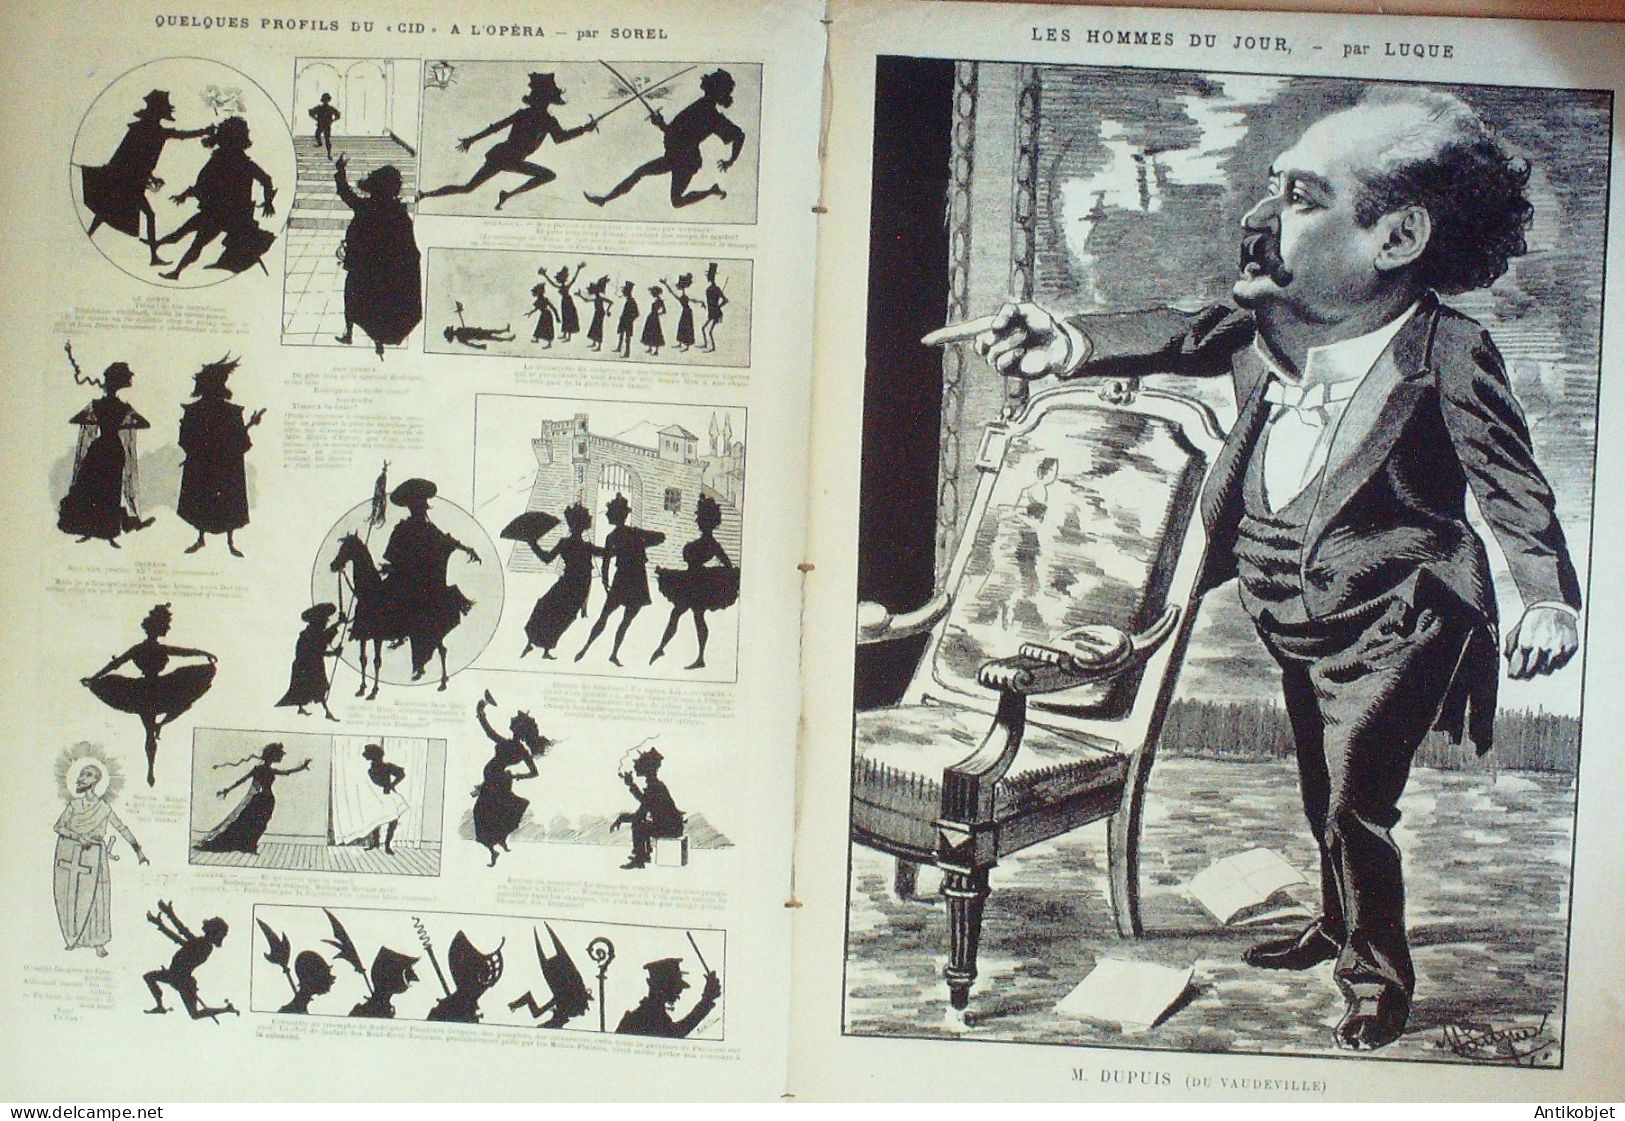 La Caricature 1886 N°318 En Mer Tiret-Bognet Octave Uzanne Dupuis Par Luque Sorel Robida - Revues Anciennes - Avant 1900